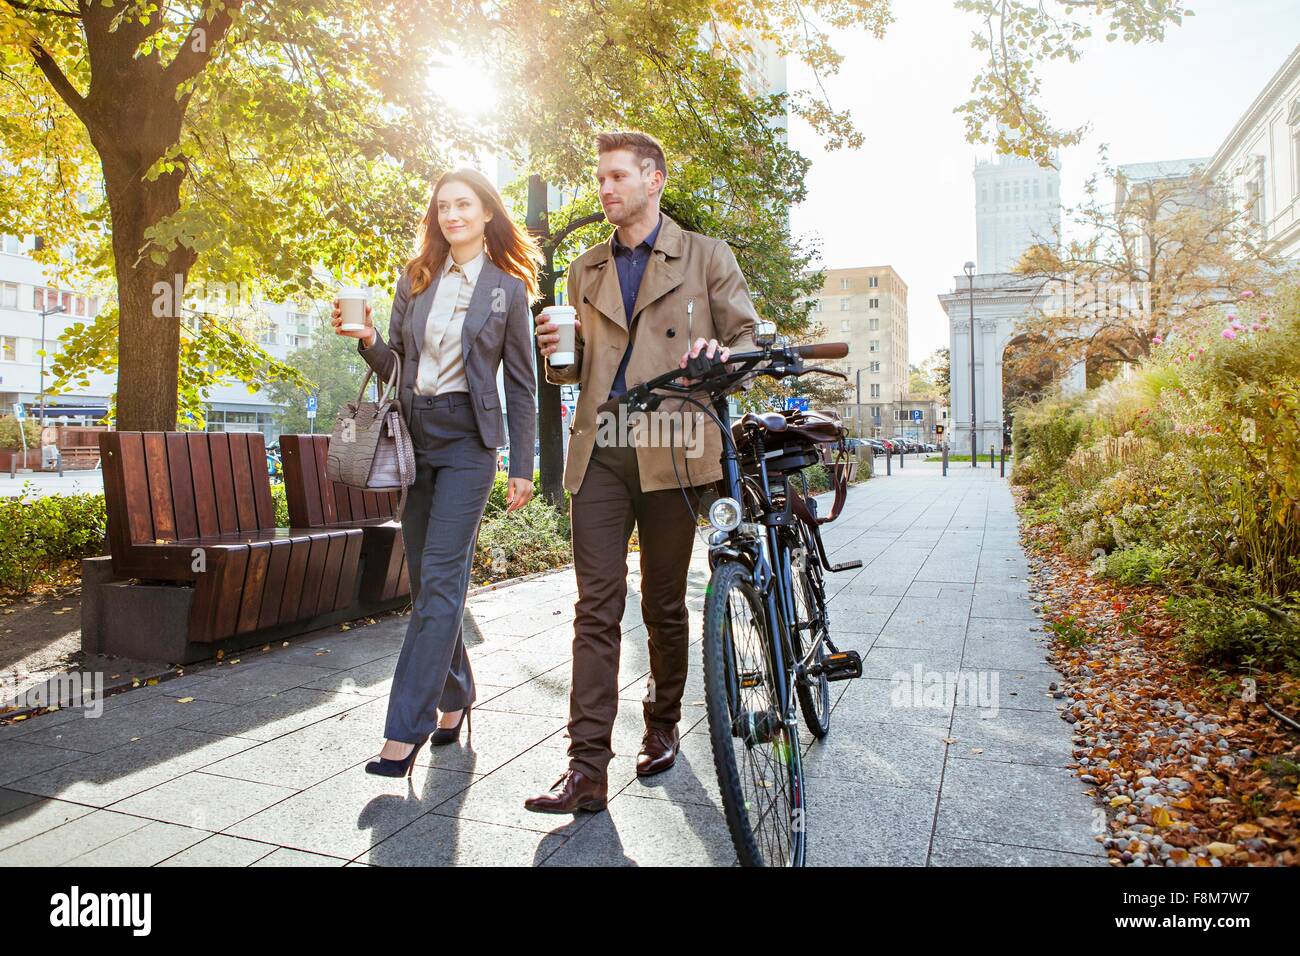 Businessman et woman pushing bike through park Banque D'Images